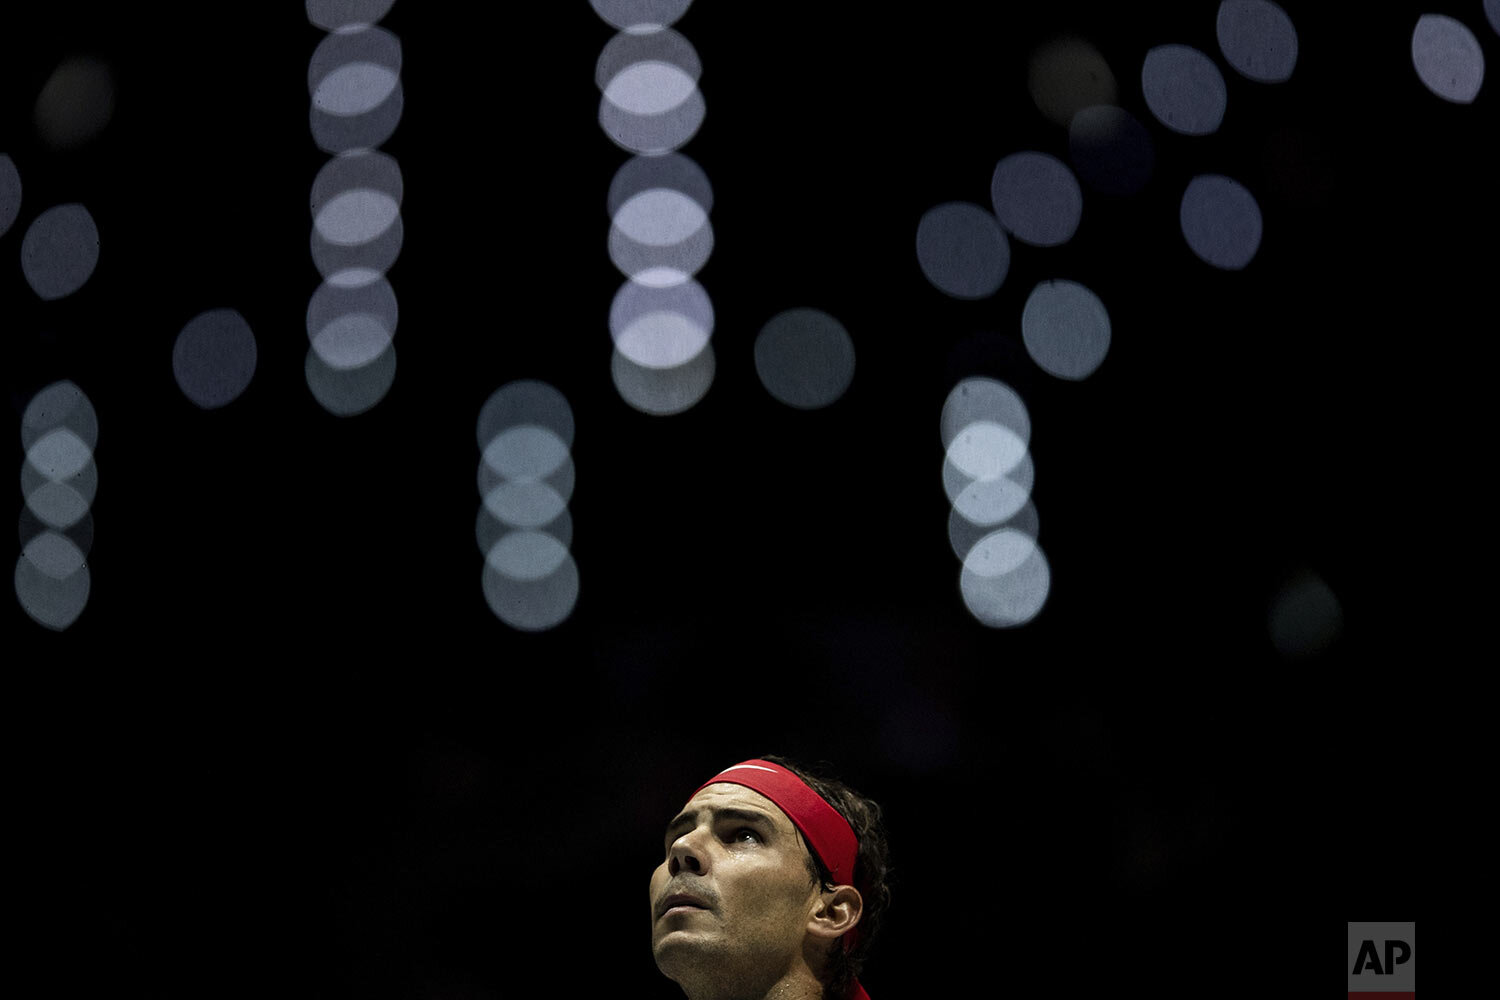  Spain's Rafael Nadal plays against Russia's Karen Khachanov during their Davis Cup tennis match in Madrid, Spain, Tuesday, Nov. 19, 2019. (AP Photo/Bernat Armangue) 